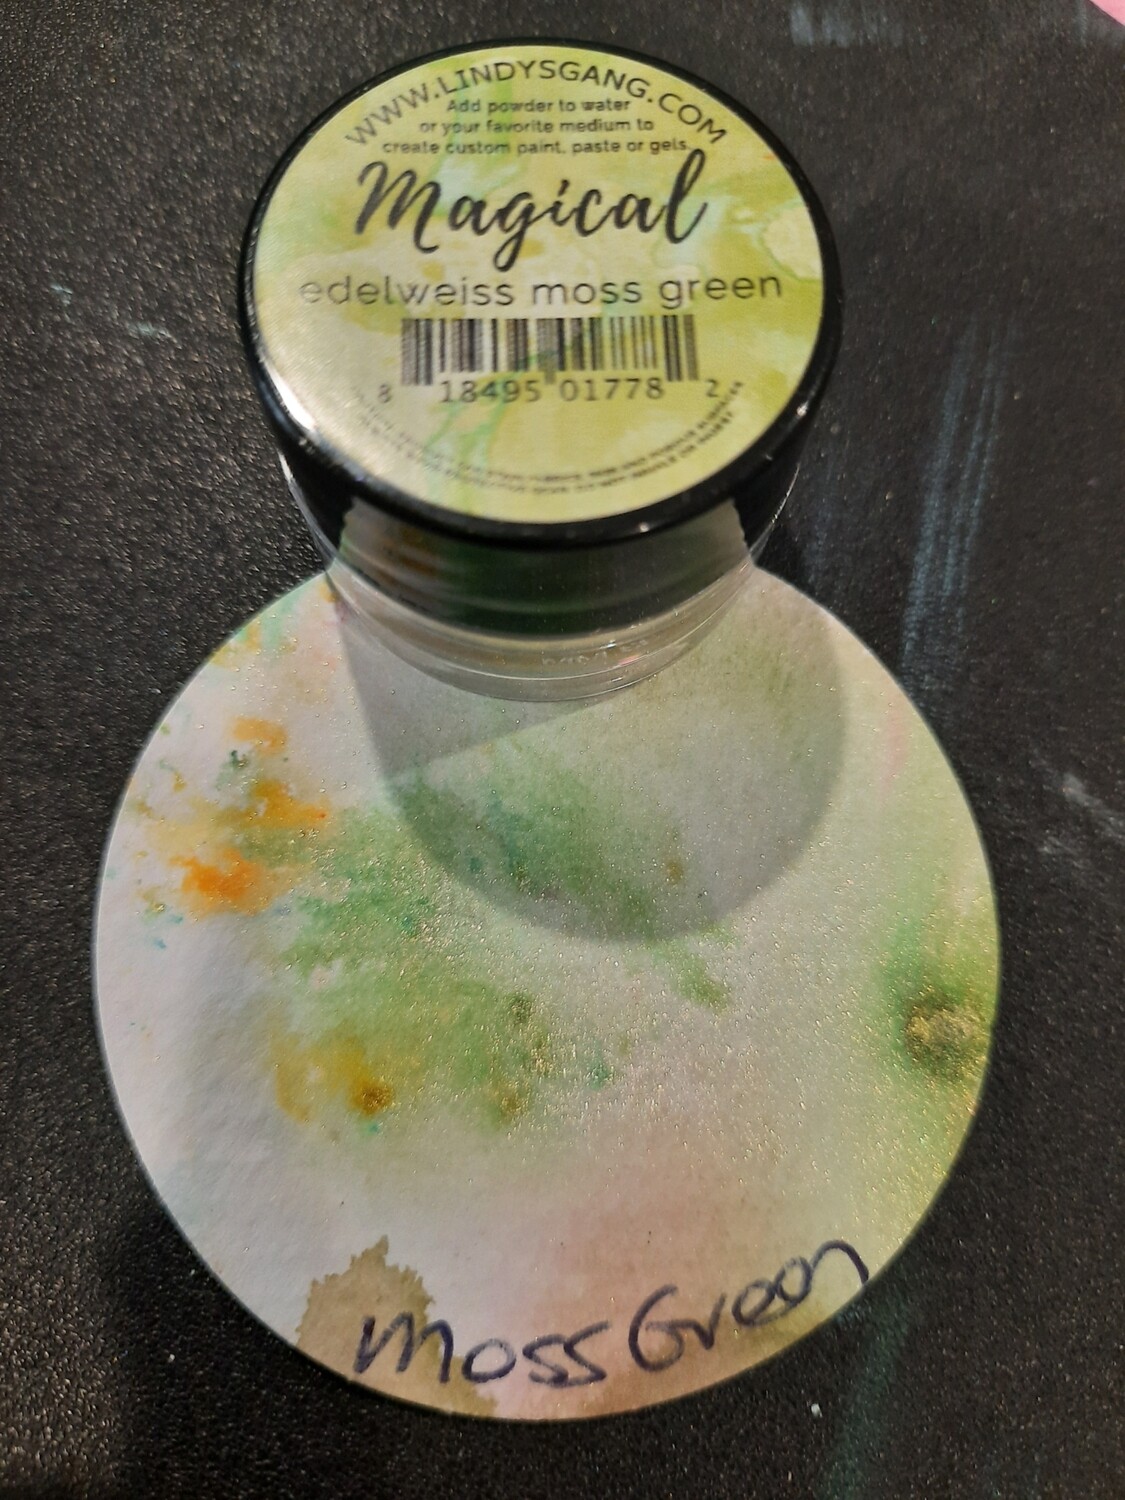 Magical edelweis moss green